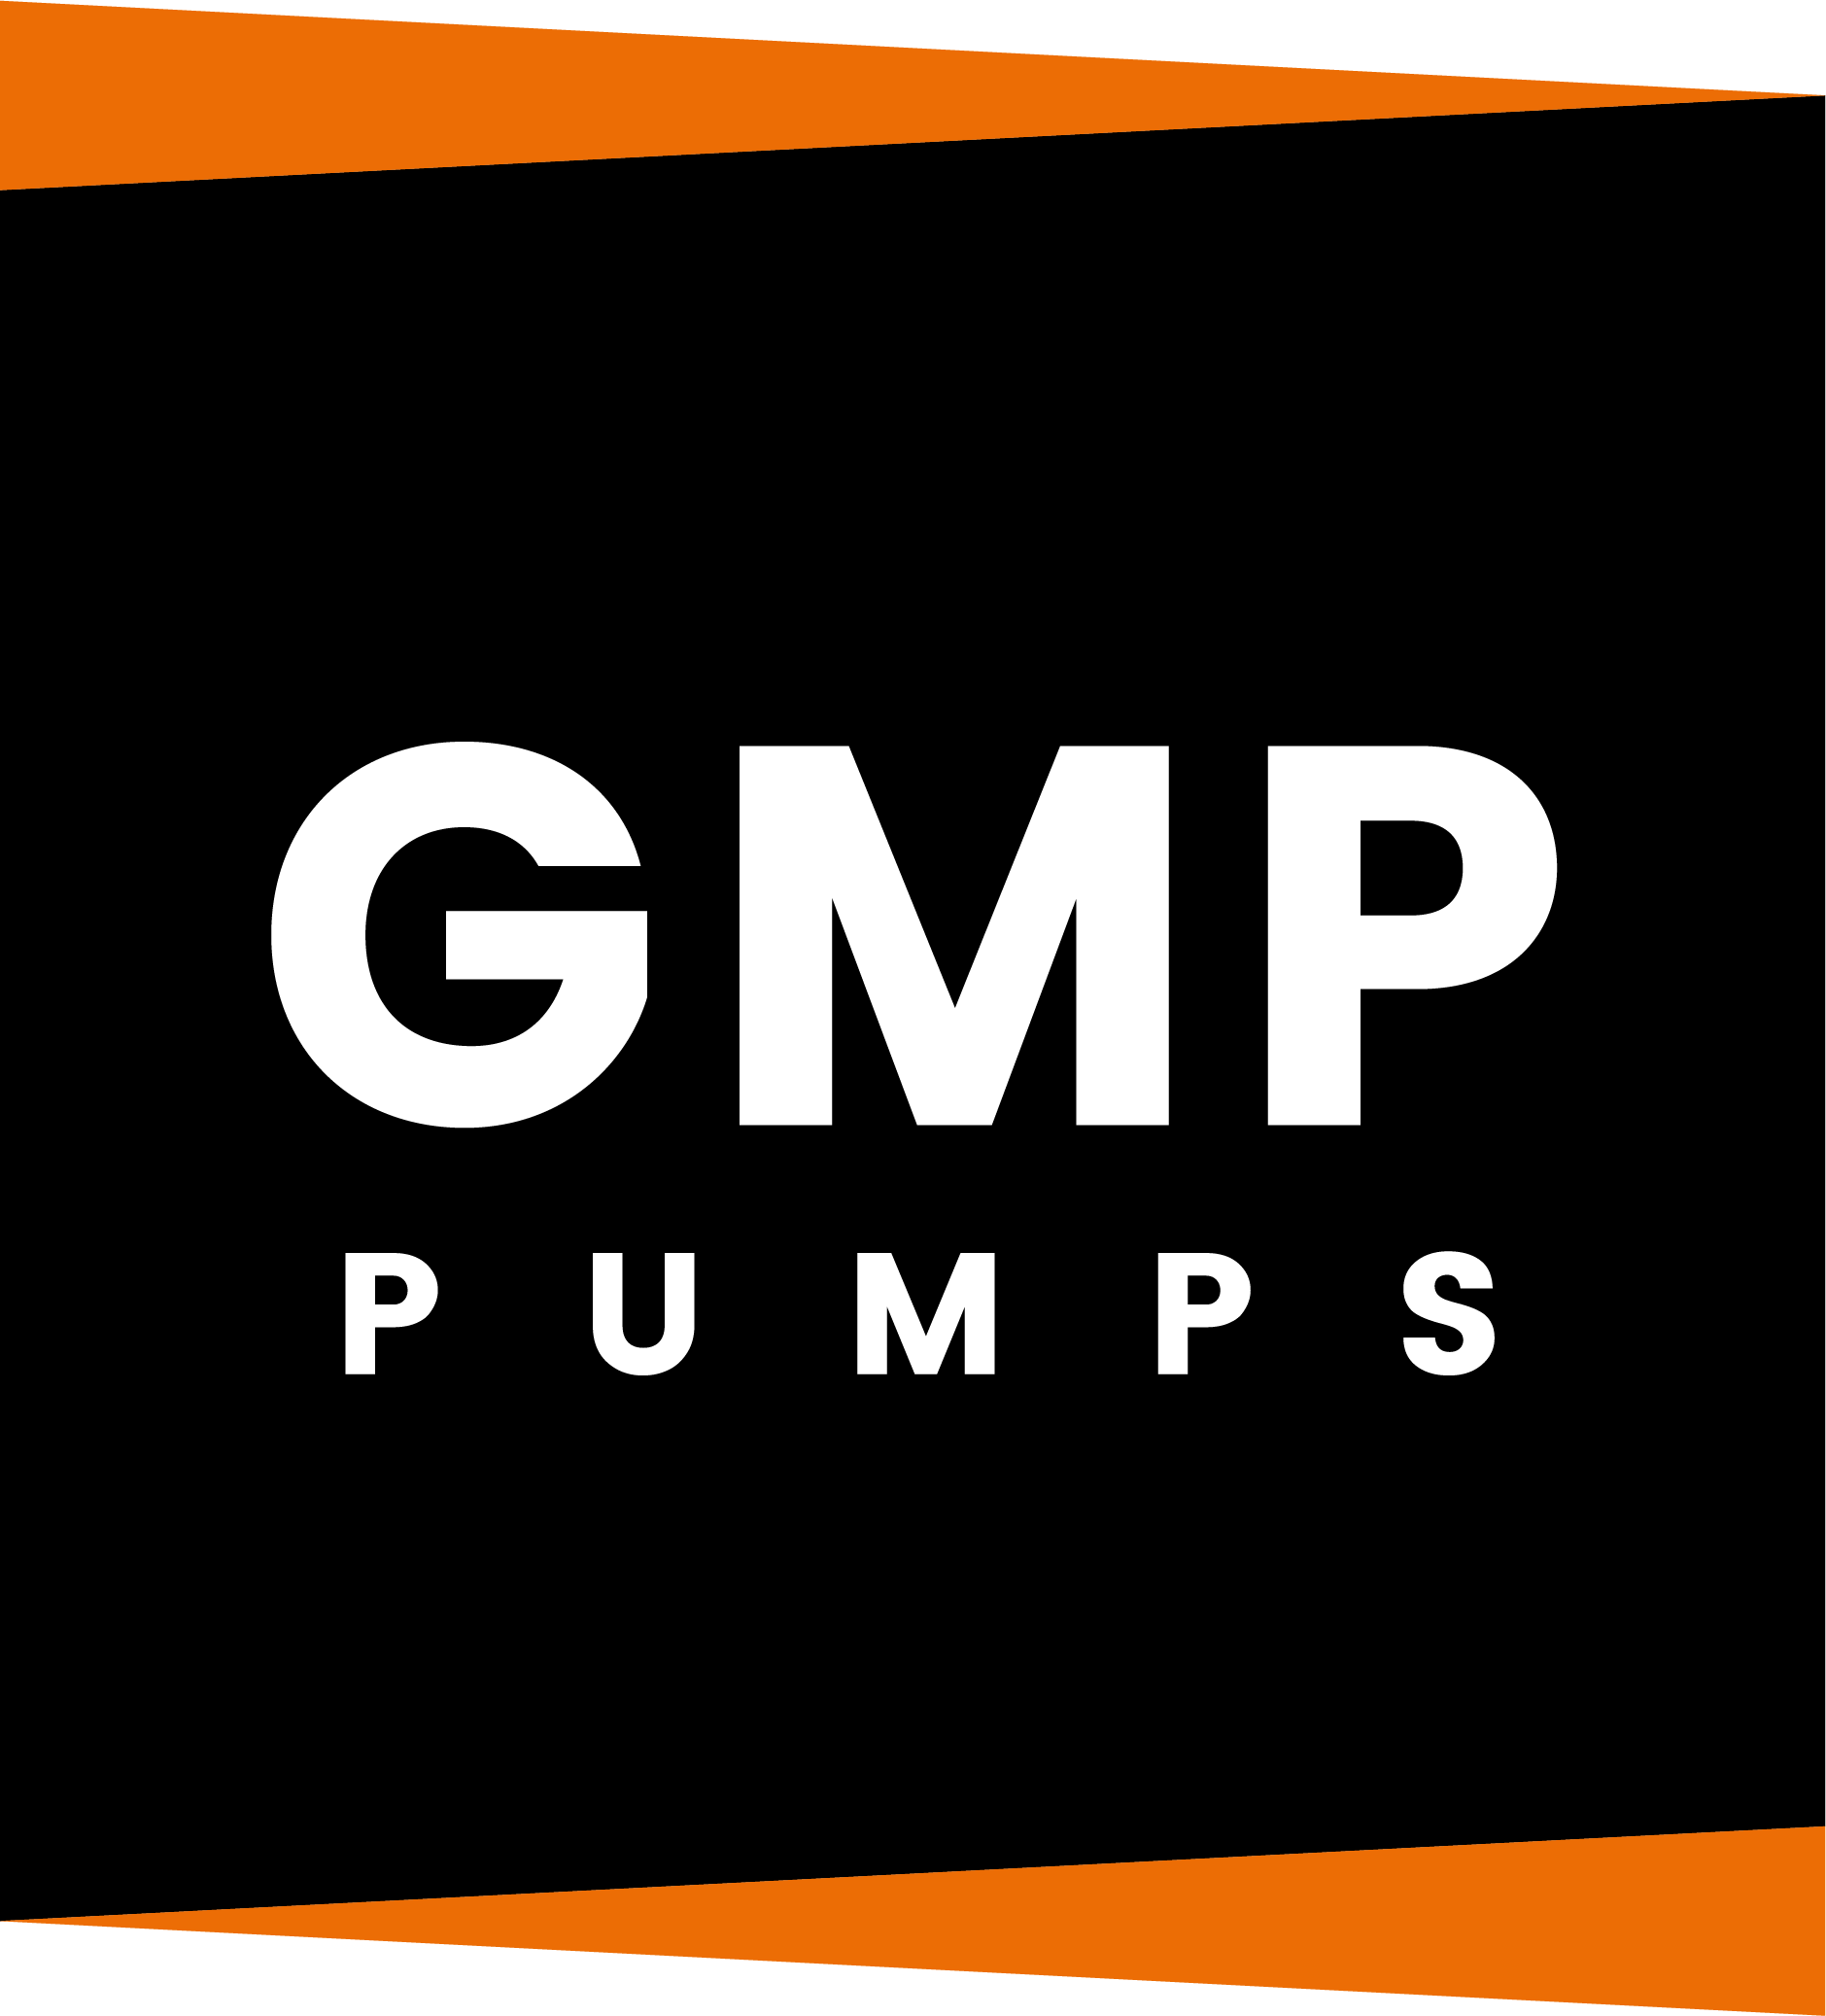 GMP pumps